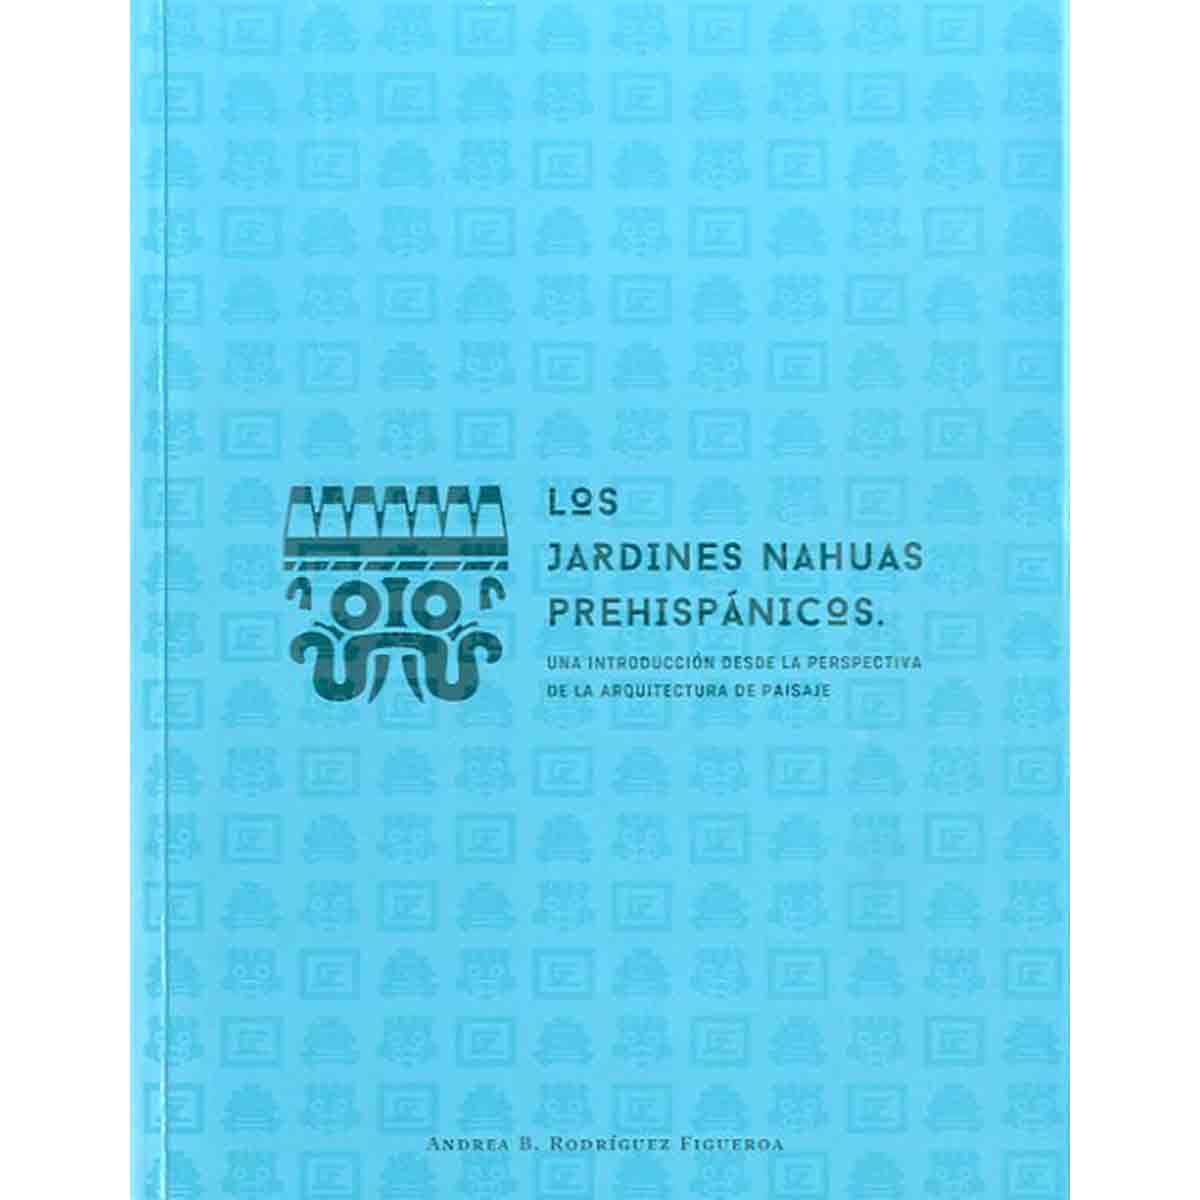 LOS JARDINES NAHUAS PREHISPÁNICOS